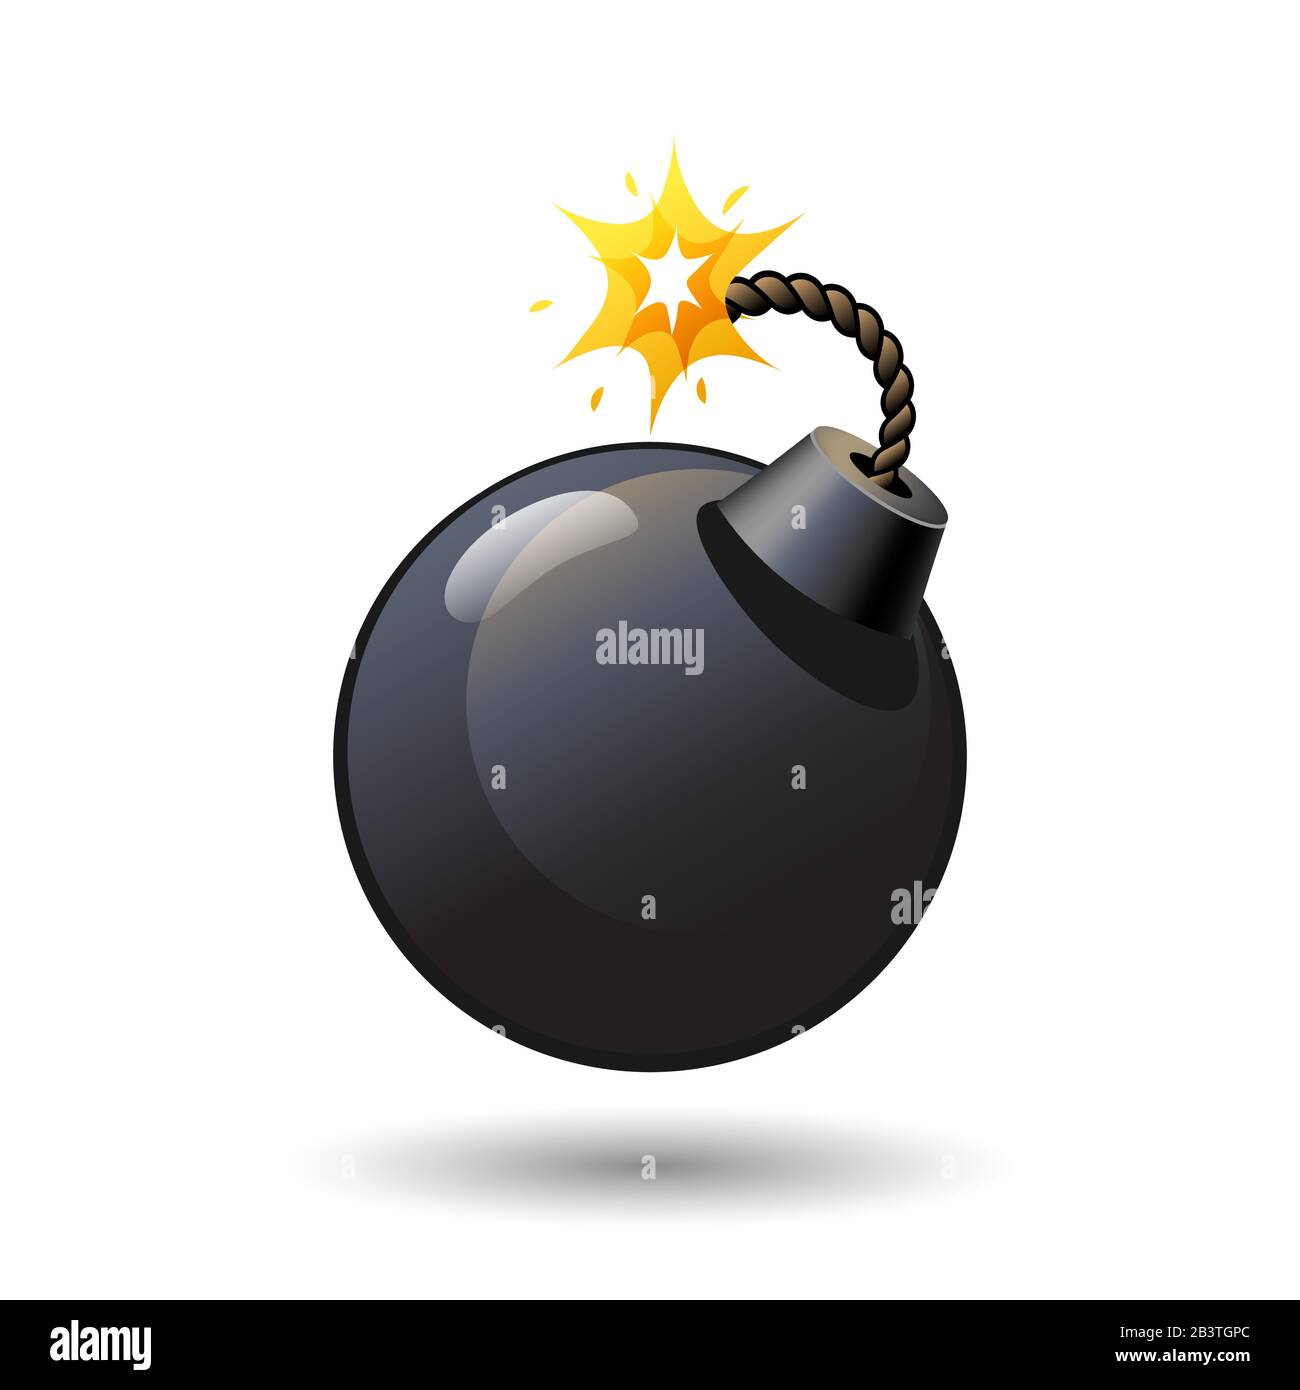 Bomba rotonda nera con icona fusibile bruciato isolato su sfondo bianco, armi, arma, illustrazione vettoriale. Illustrazione Vettoriale